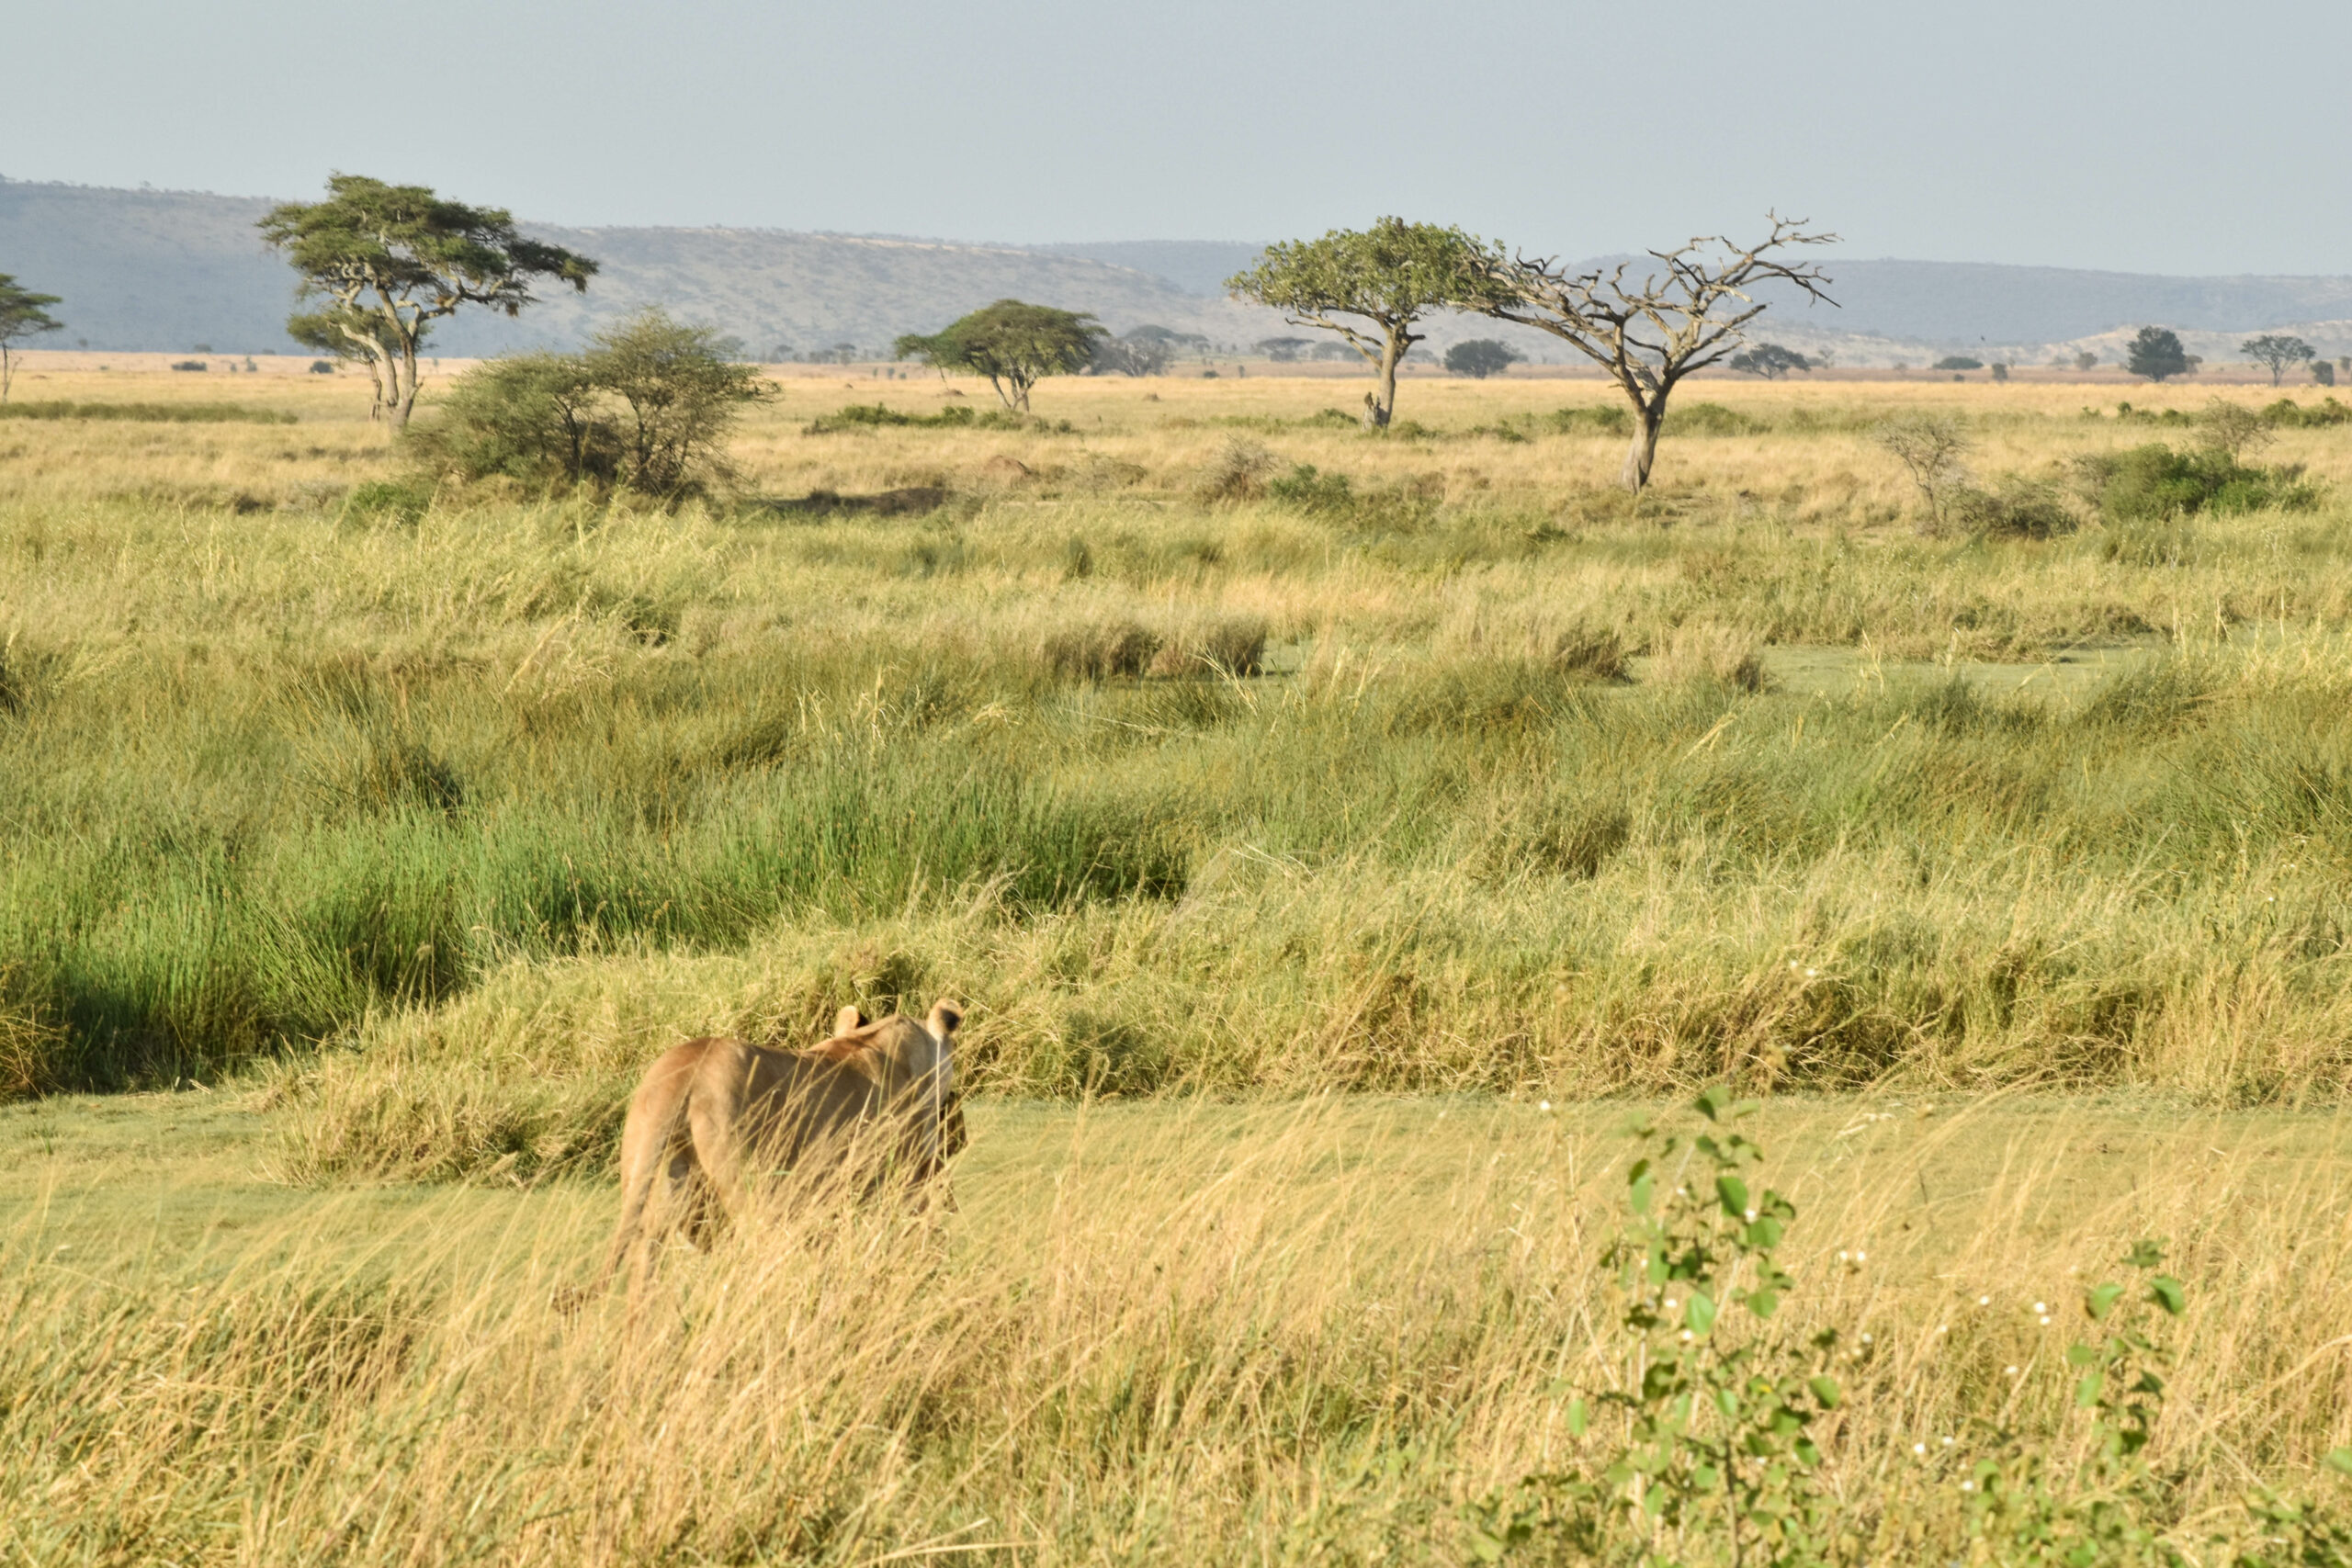 Lionne de dos, à moitié cachée, en train de marcher dans l'herbe jaune de la savane du Serengeti, avec quelques acacias au loin